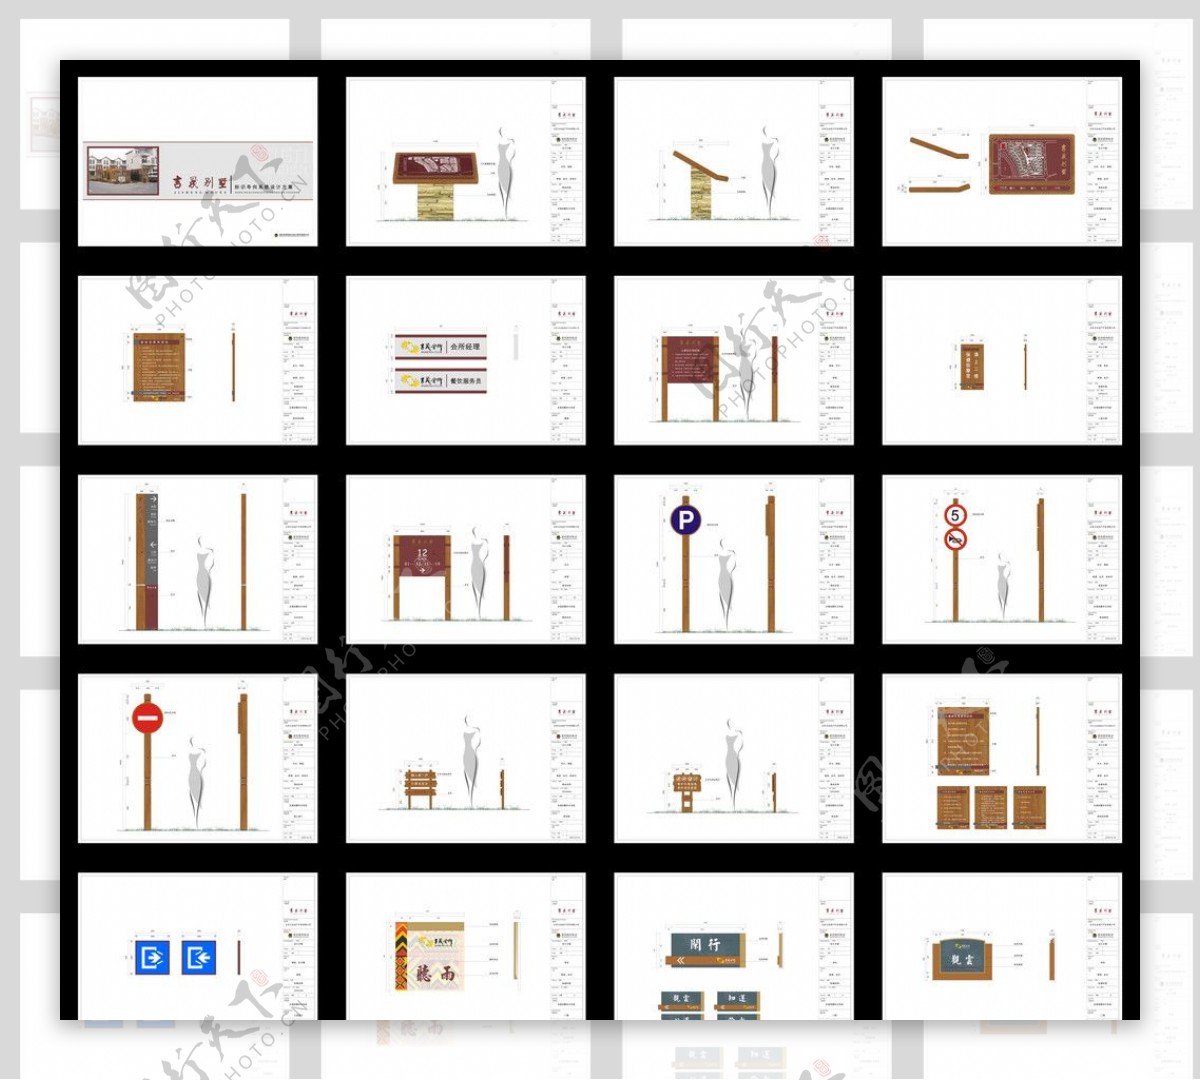 吉晟别墅标识系统设计方案图片